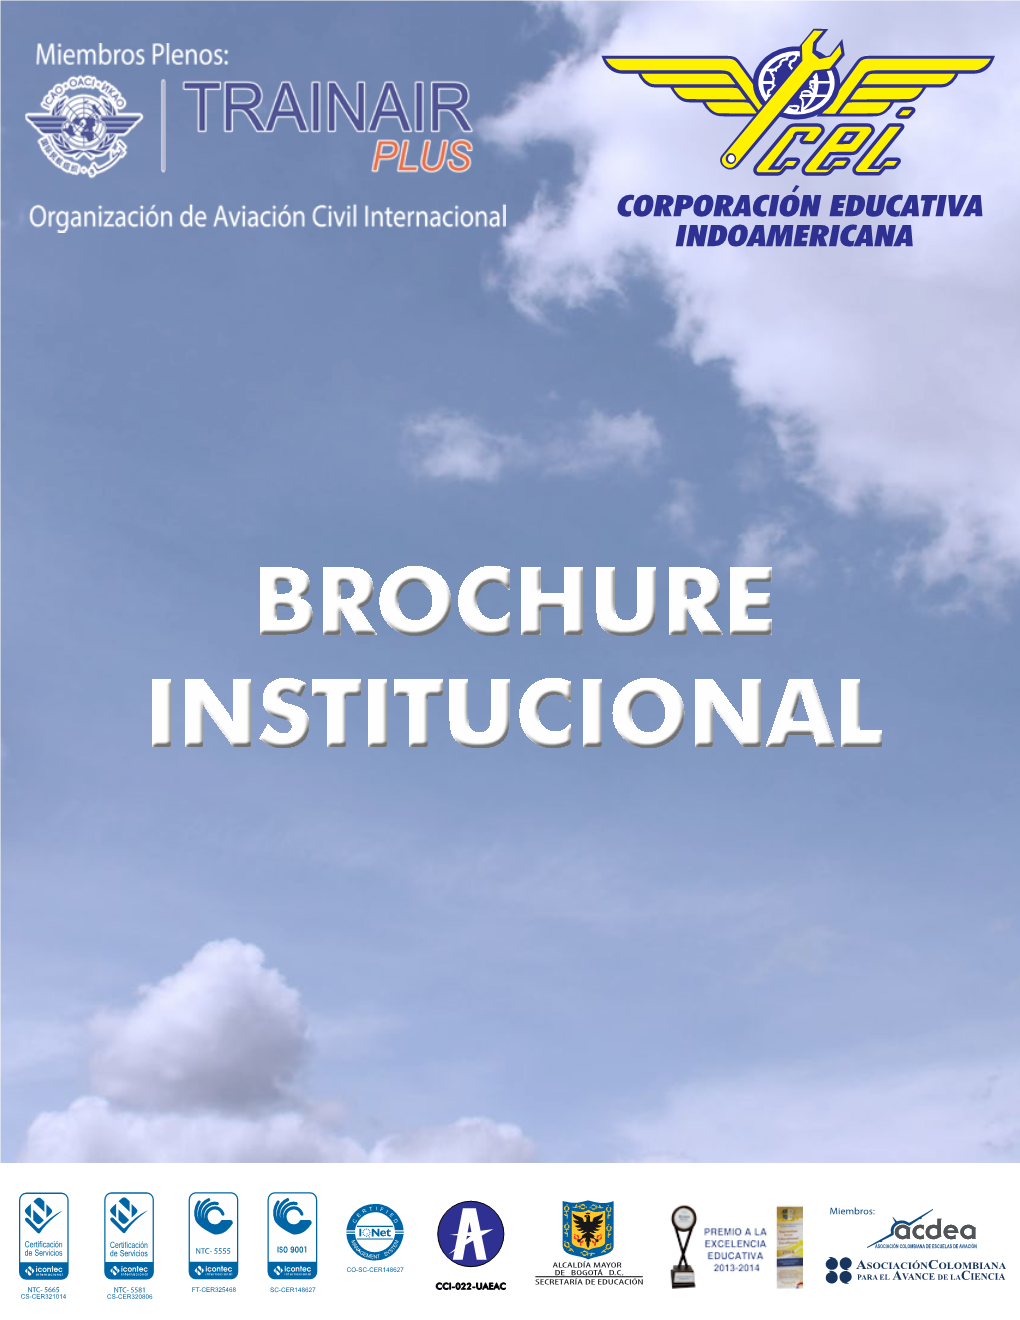 Brochure Institucional Presentación